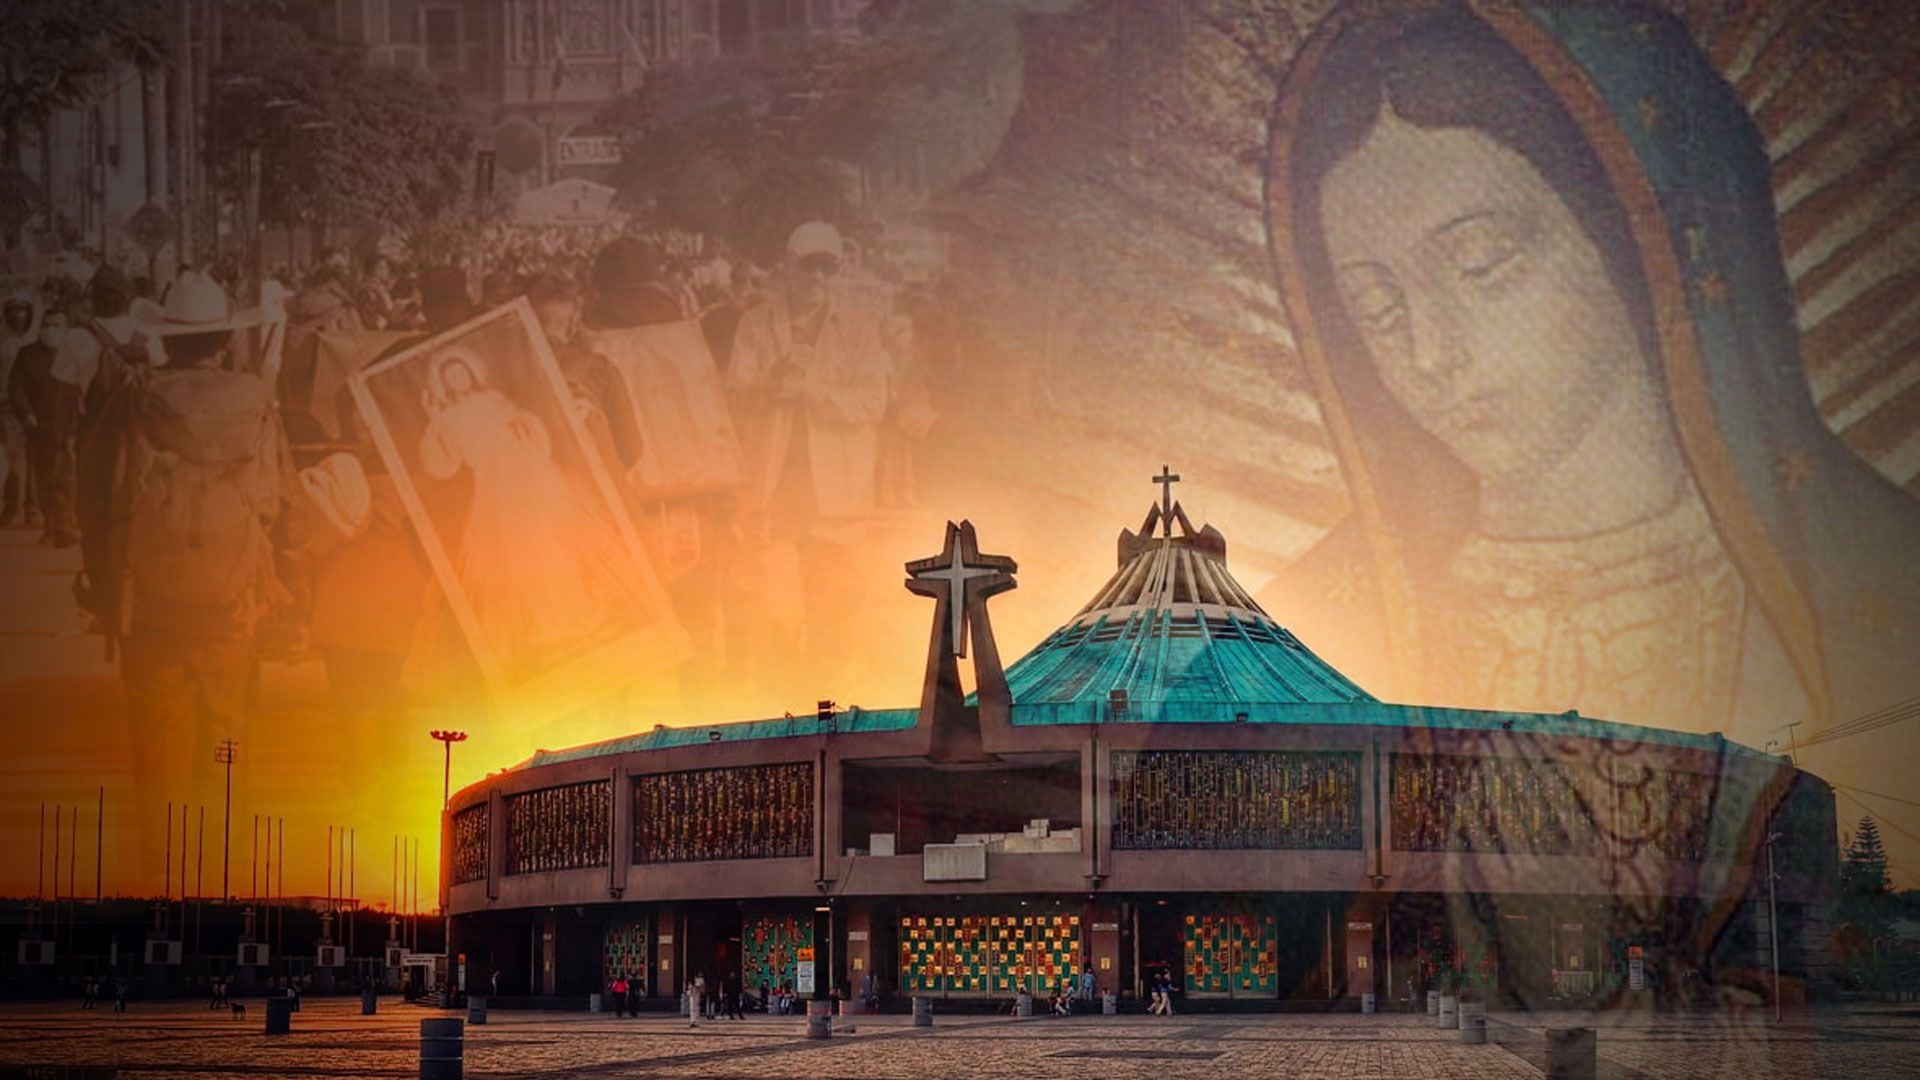 Devotos de todo el país anticipan la conmemoración de la Virgen en la Basílica, marcando una fecha clave para la fe católica en México